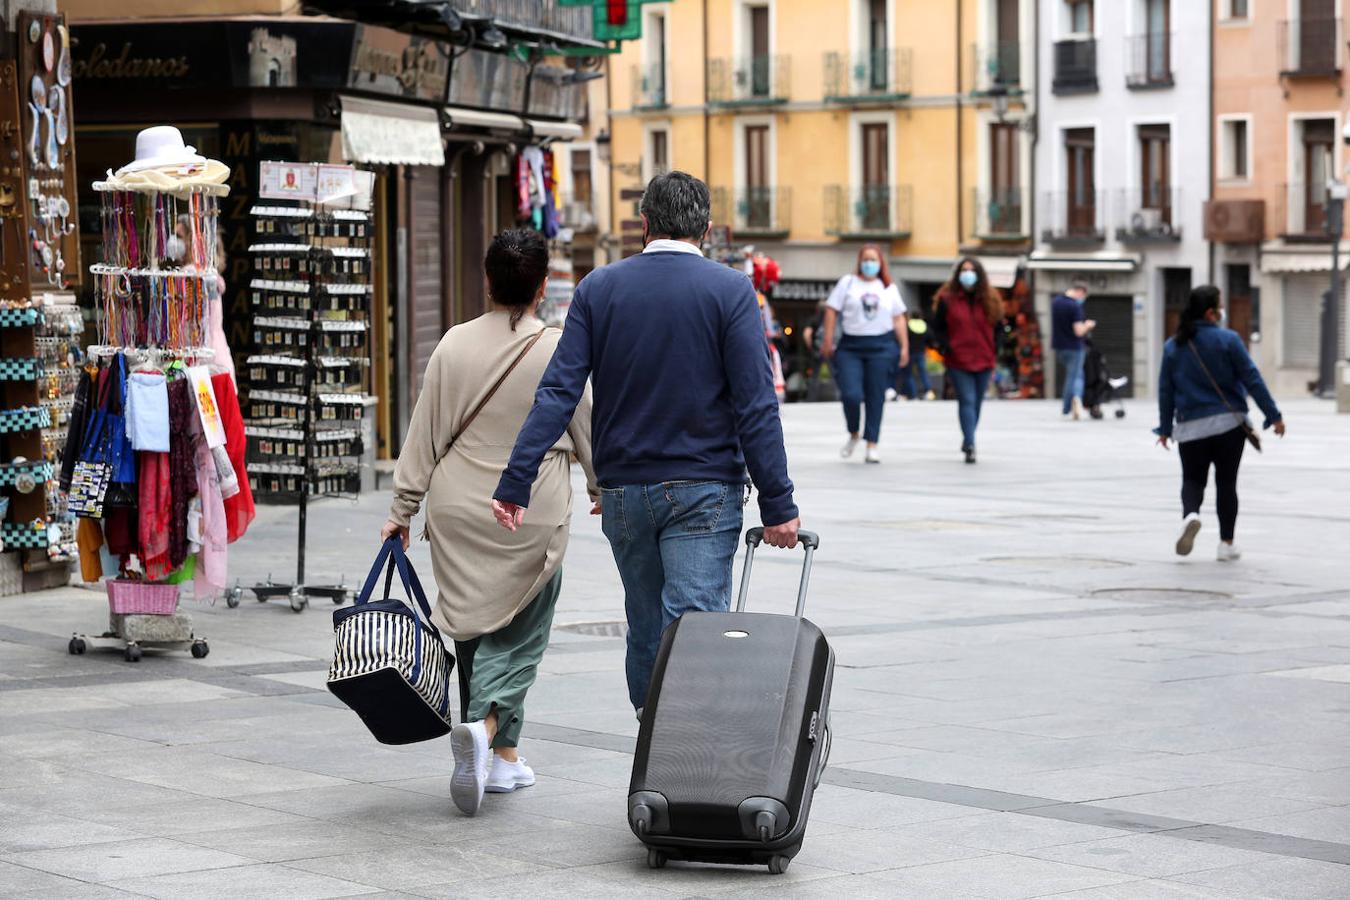 Regresan poco a poco los turistas a Toledo